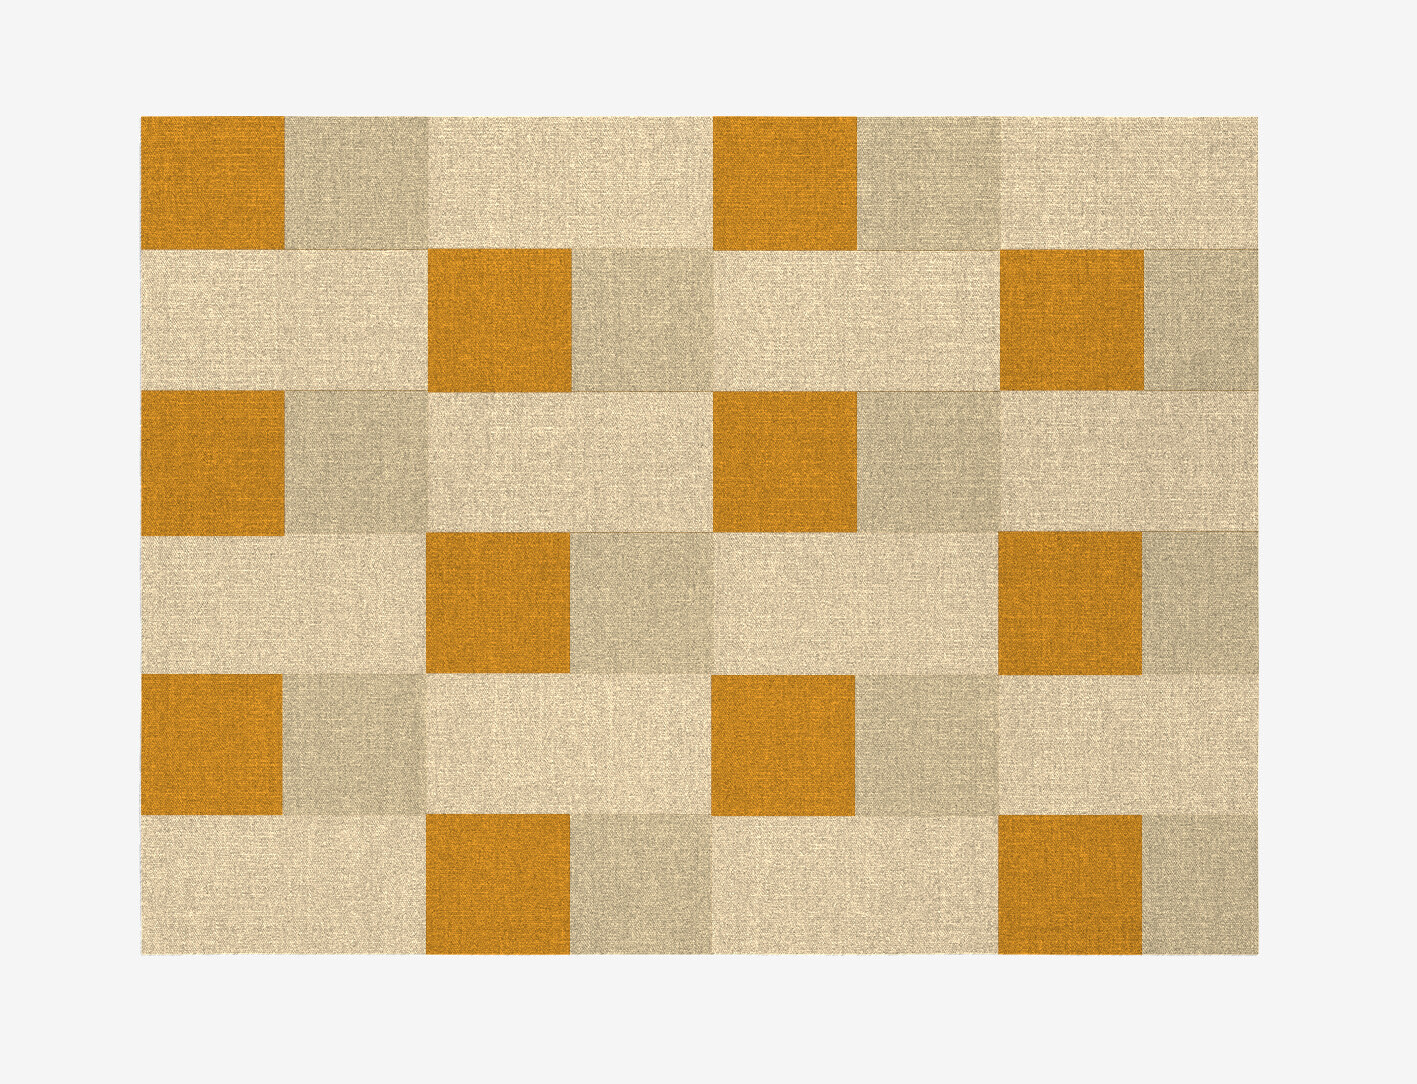 Aralia Geometric Rectangle Flatweave New Zealand Wool Custom Rug by Rug Artisan